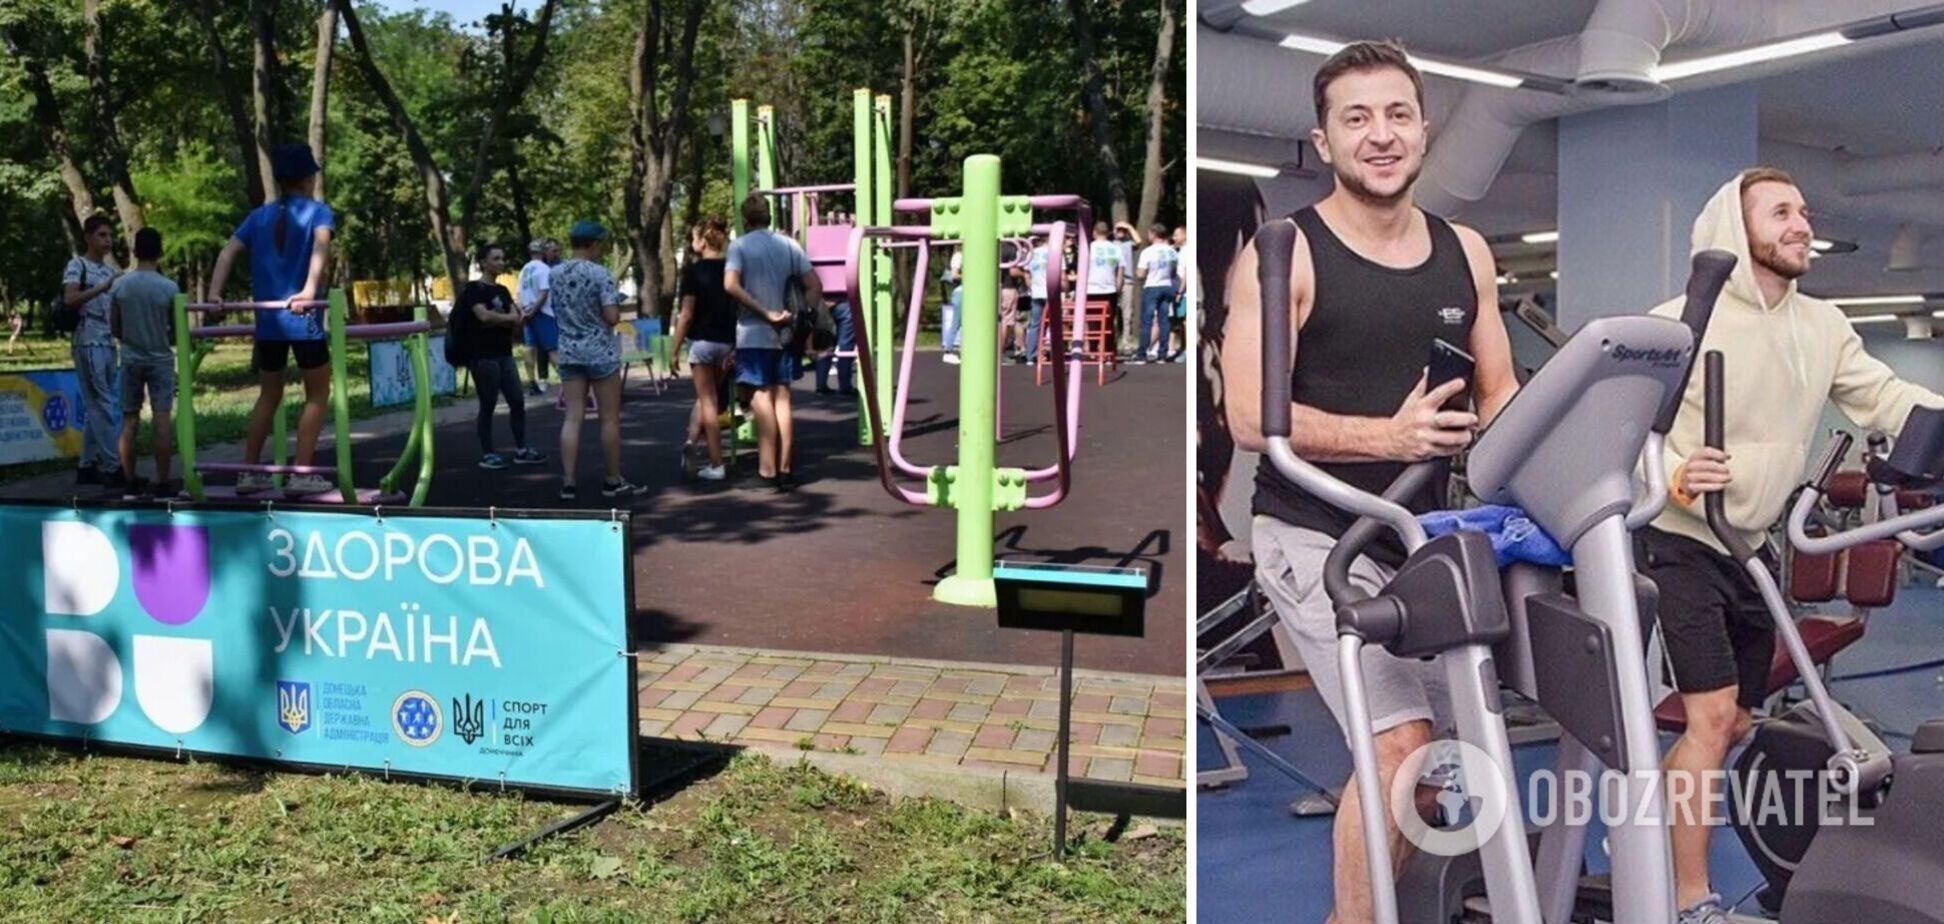 Идею 'Активных парков' Зеленскому подсказал его личный фитнес-тренер – СМИ